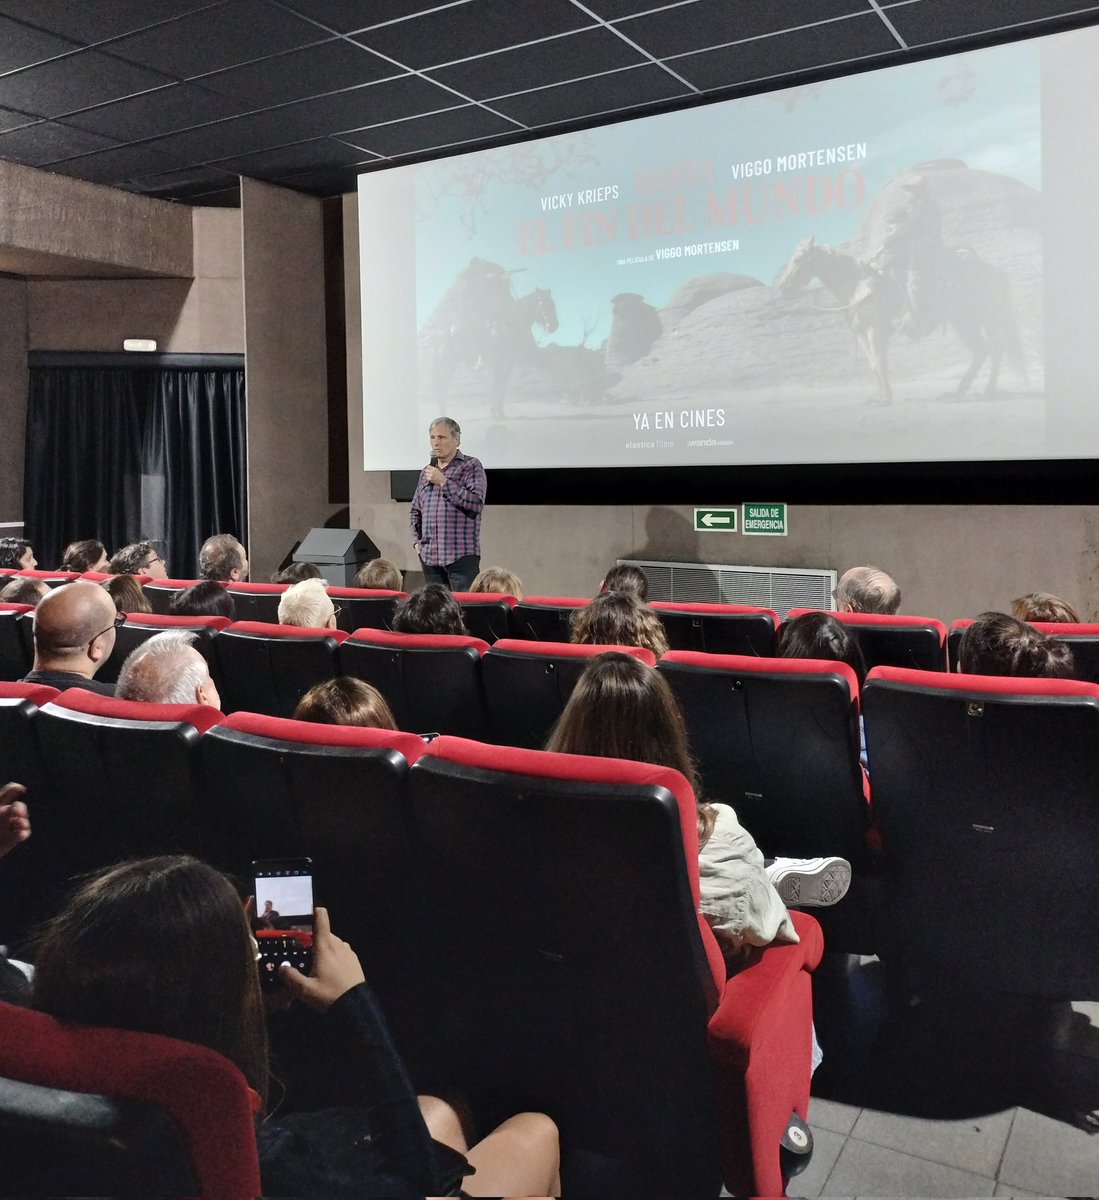 🔴 EN DIRECTO DESDE RENOIR PRINCESA Sesión llena para charlar con Viggo Mortensen sobre su película 'Hasta el fin del mundo'